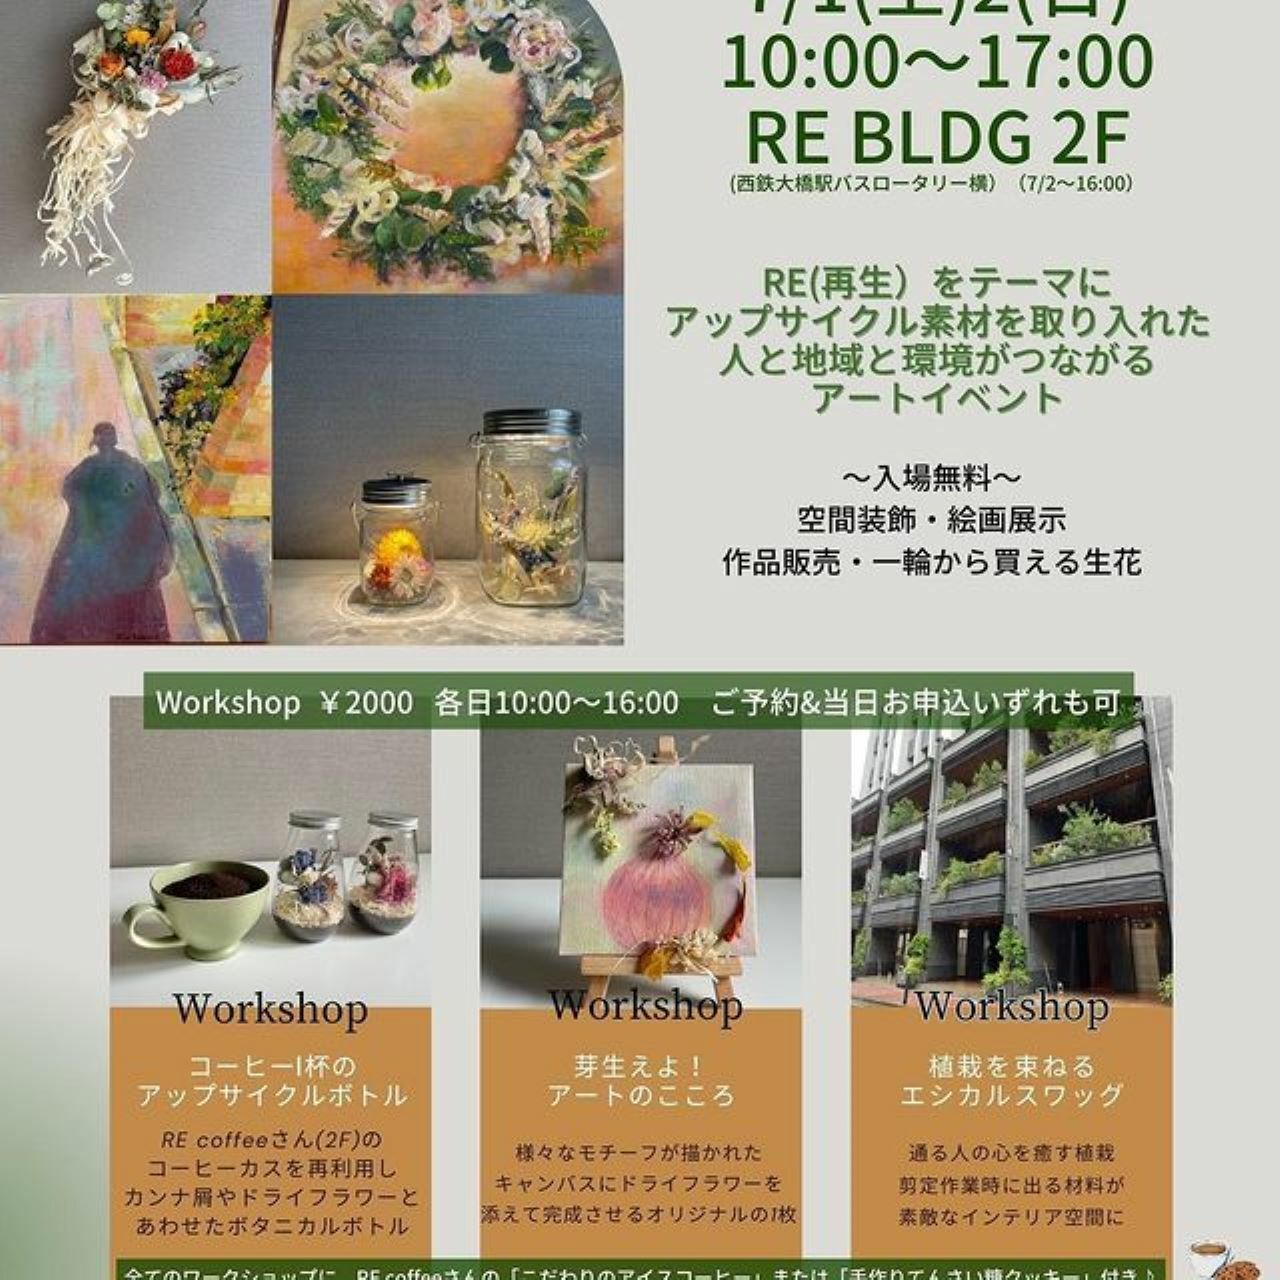 ※画像提供：Dryflower Chiyocotton(ちょこっとん) Fukuoka